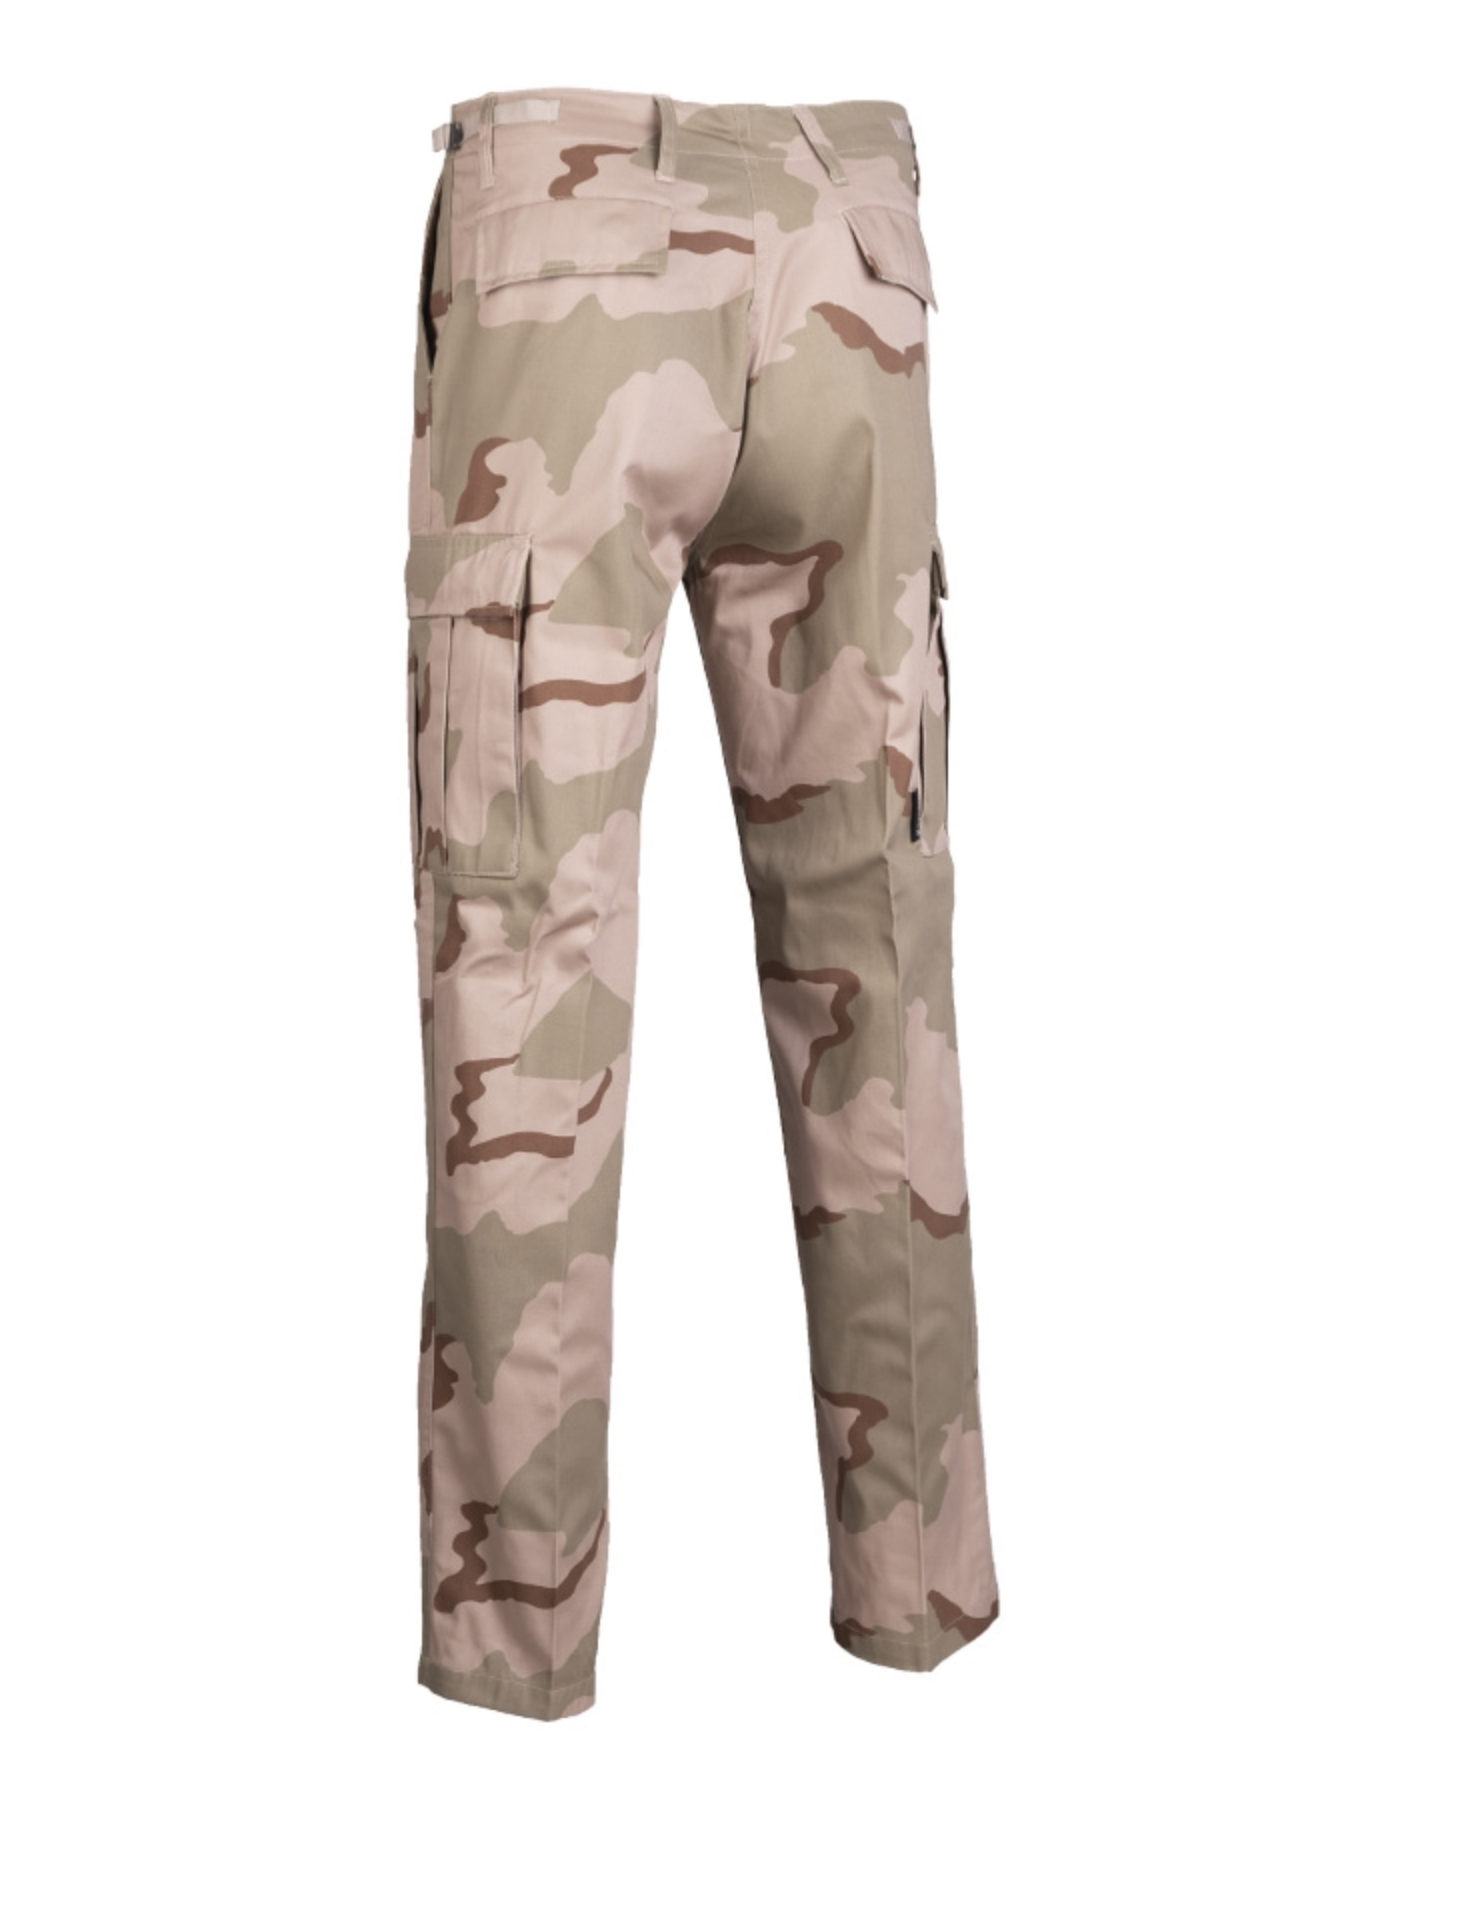 Derbeville test Helligdom tømrer US Battle Dress Uniform bukser - Mange lommer - 417.dk.